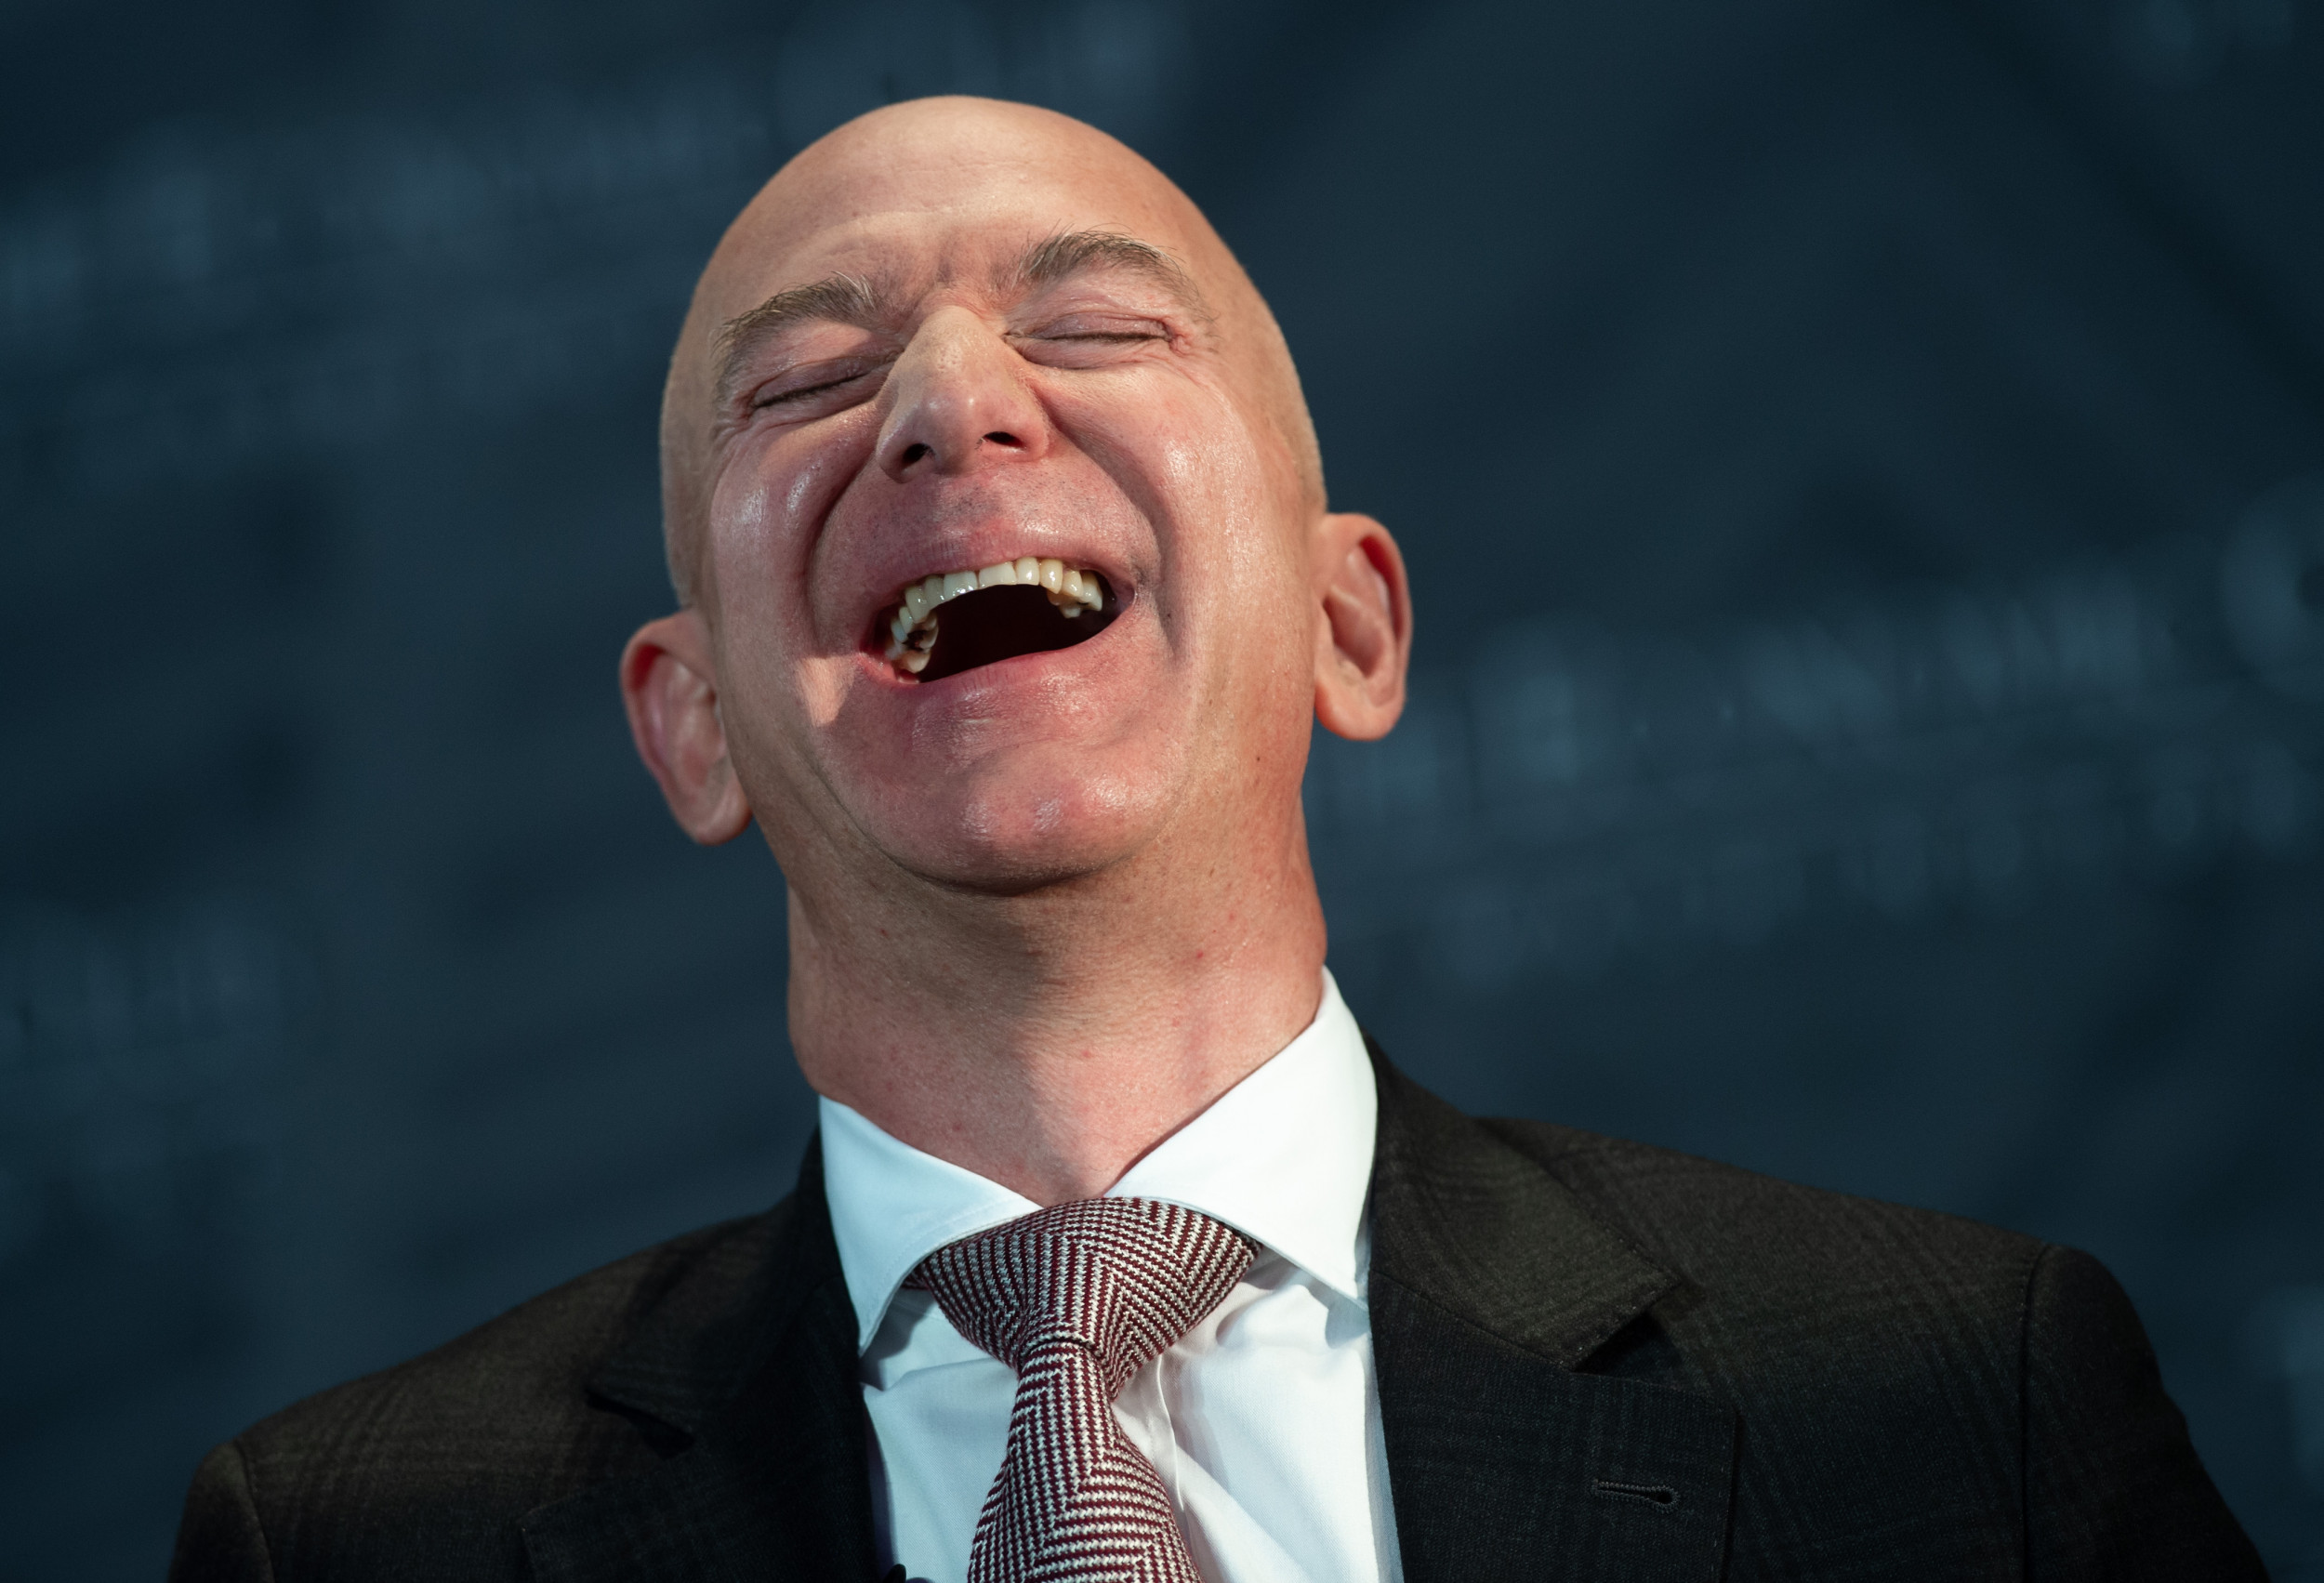 Jeff Bezos is happy